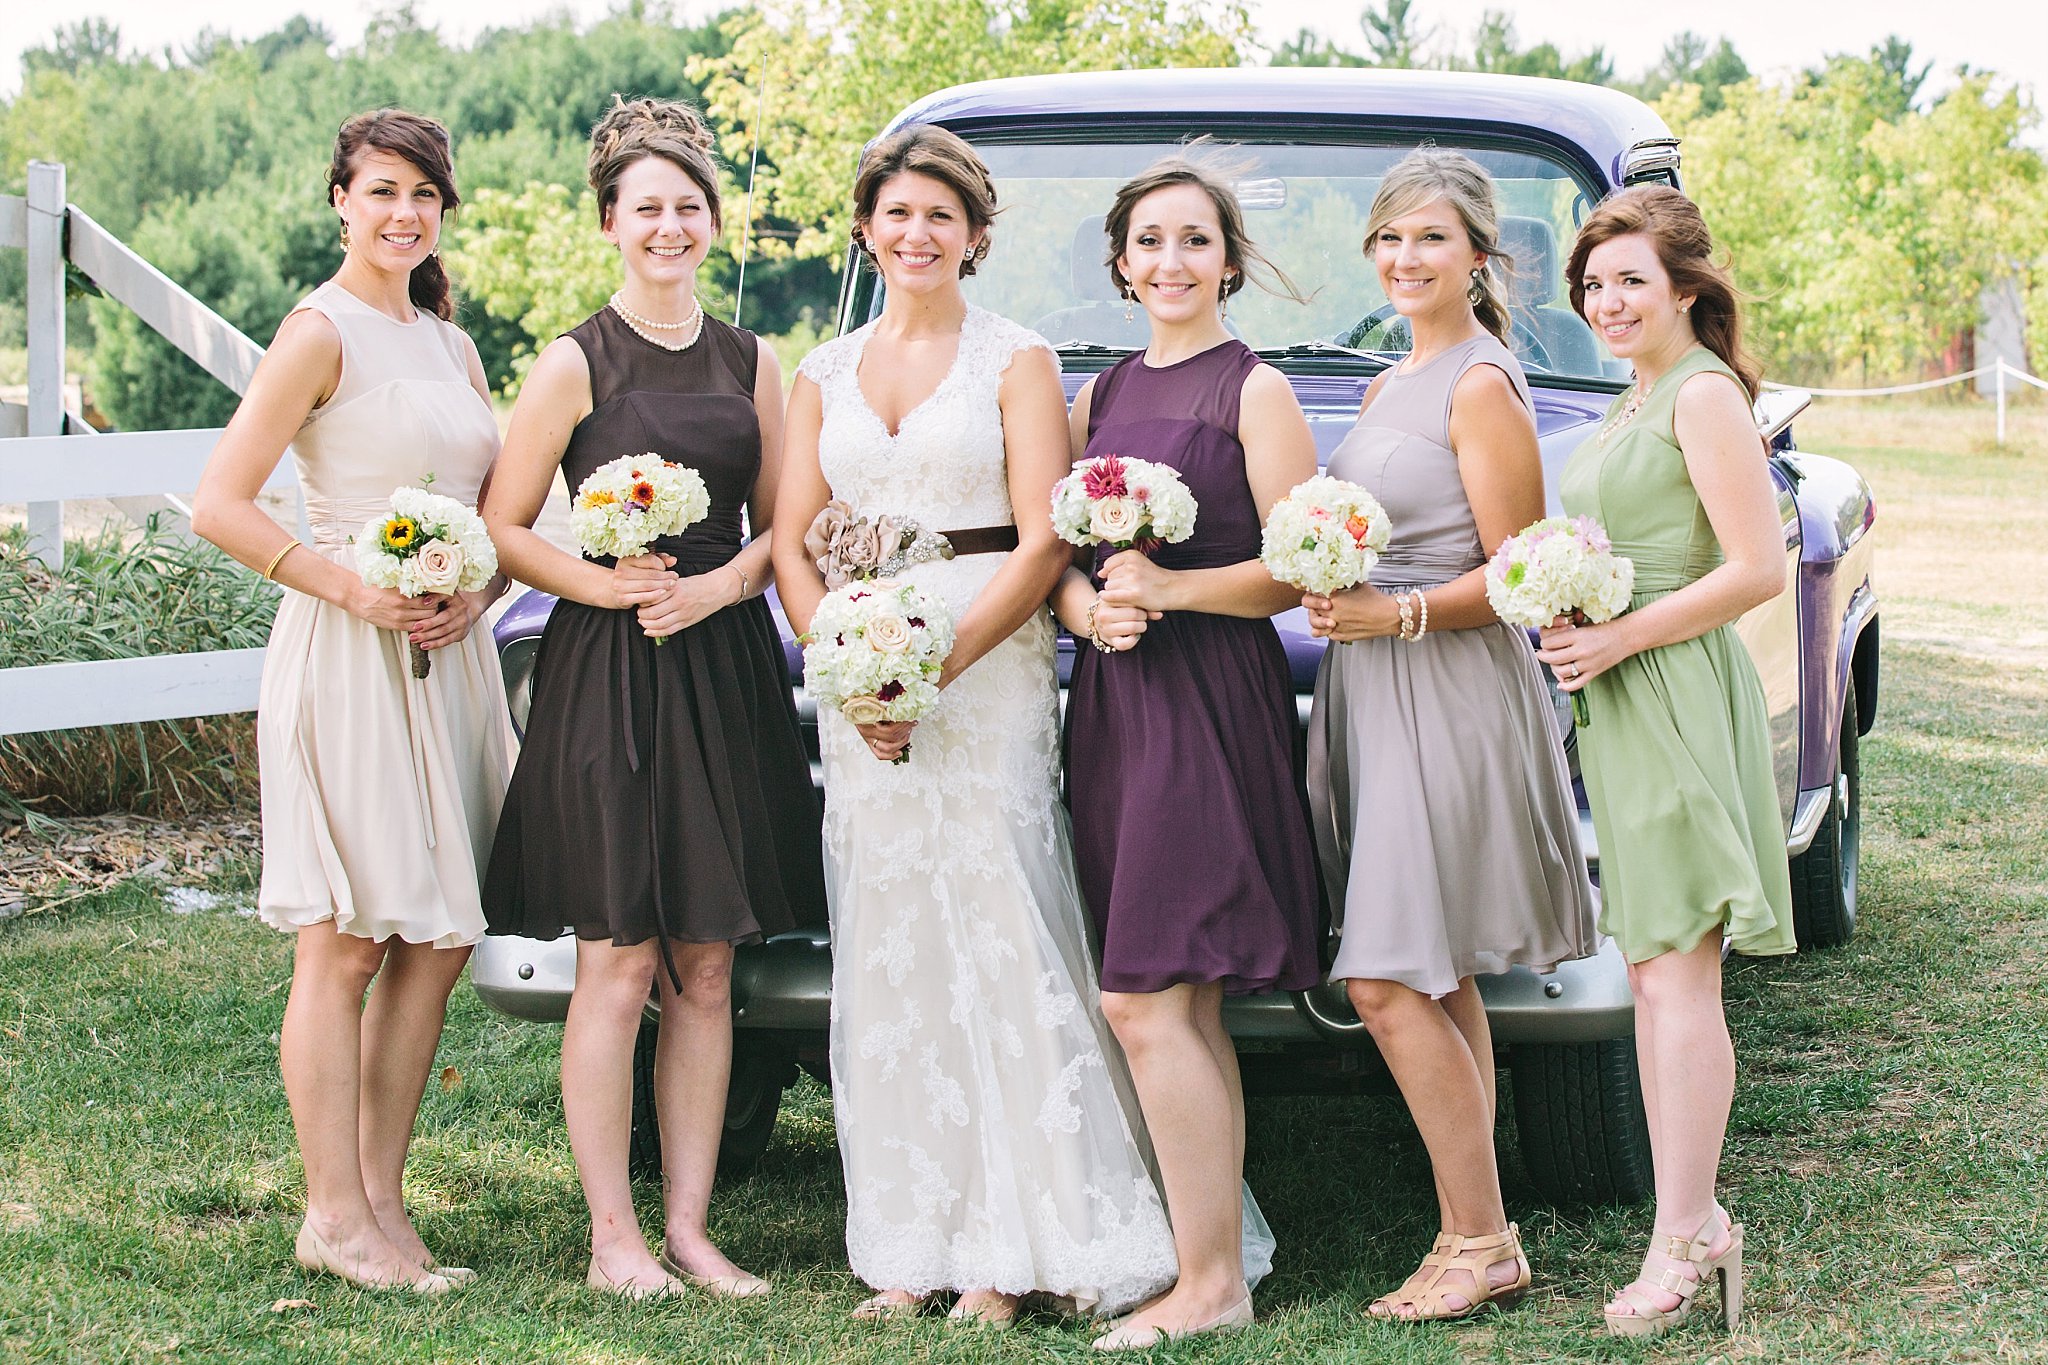 Country bride + bridesmaids